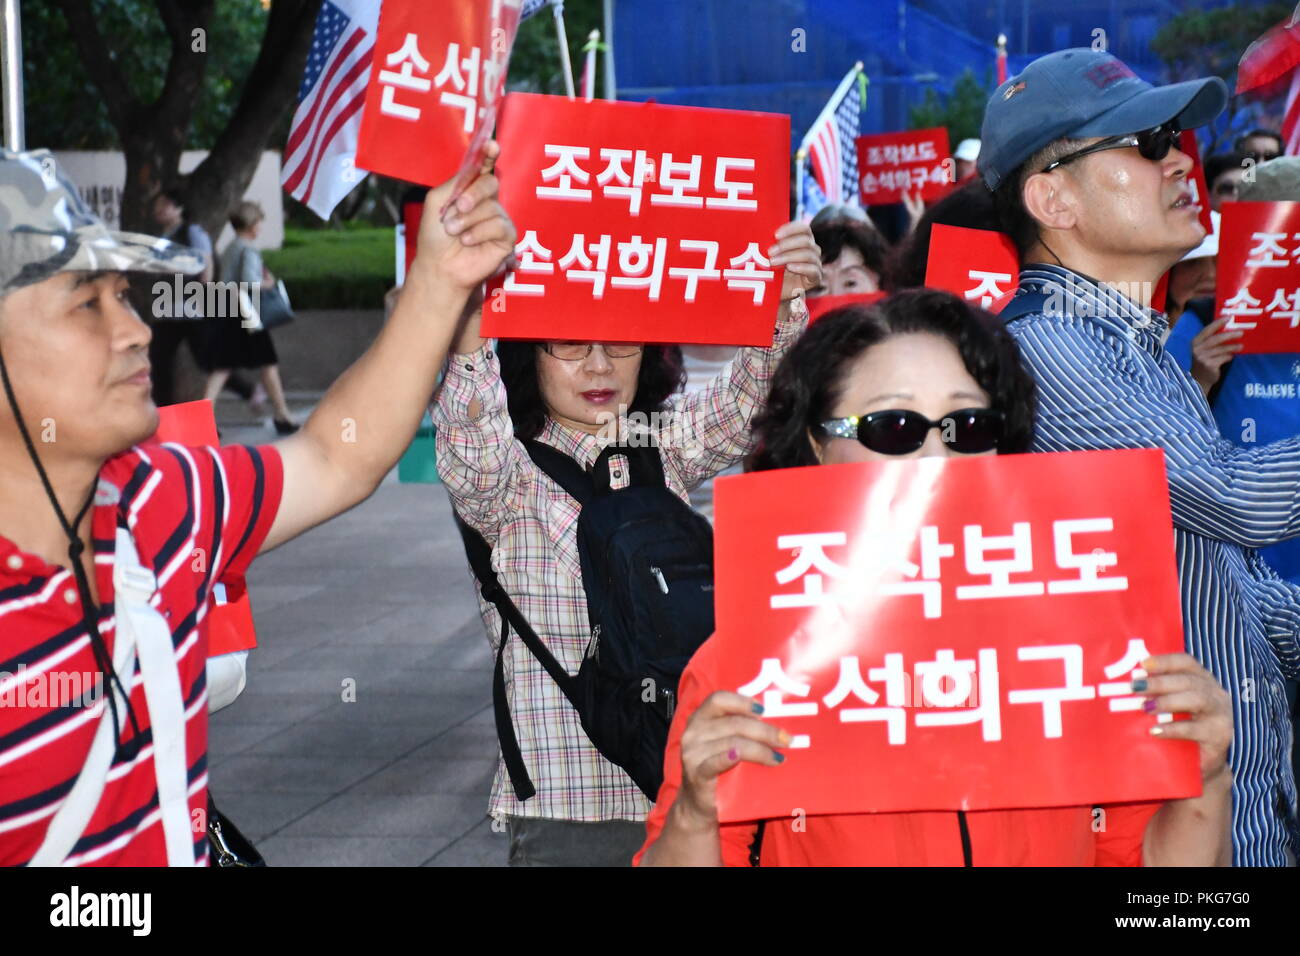 14 Settembre, 2018. Seul in Corea. I dimostranti si sono riuniti a Seul per chiedere il rilascio delle destre commentatore e giornalista Byun Hee-jae su accuse di diffamazione nella sua segnalazione di una competitiva società di radiodiffusione. Byun è stato arrestato nel mese di maggio e il suo caso è attualmente dinanzi ai tribunali.Credit: Michael Davis/Alamy Live News Foto Stock